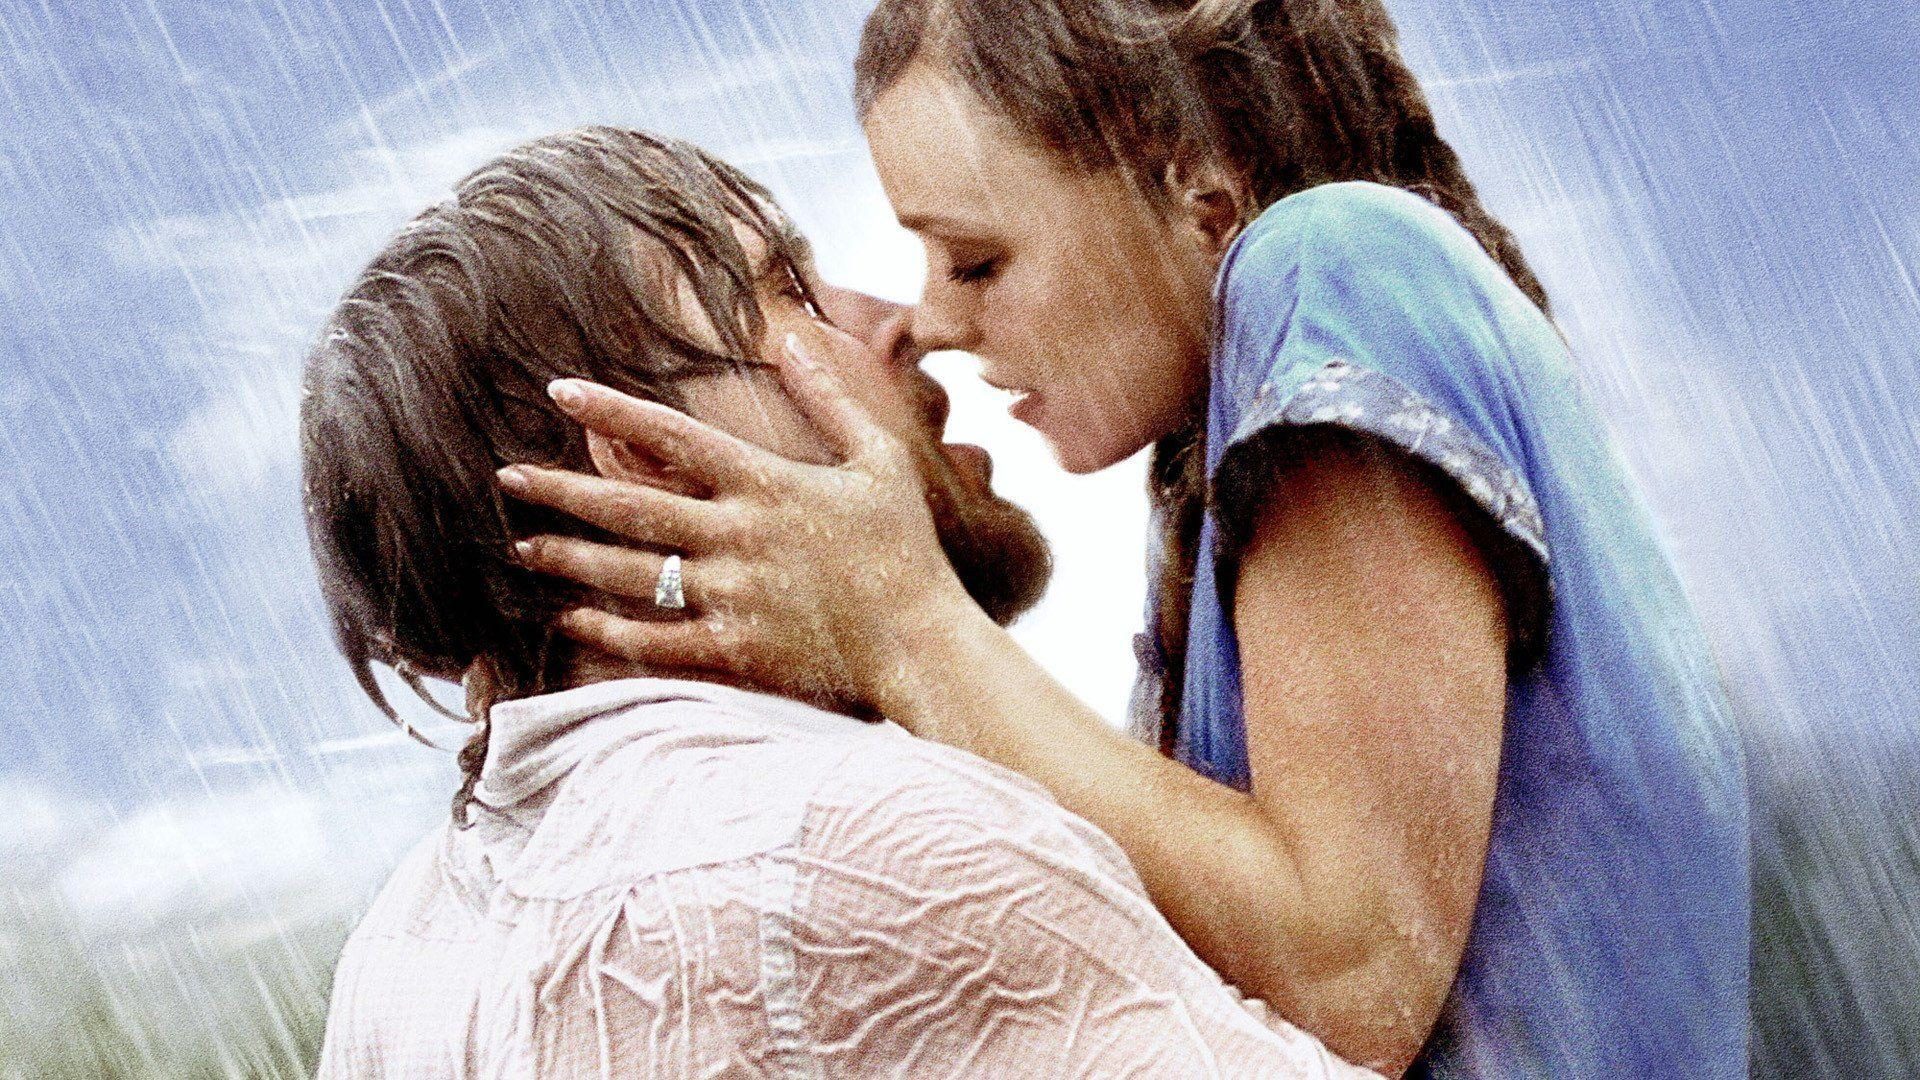 Sonbaharda İzlenecek 5 Romantik Film Tavsiyesi - The Notebook